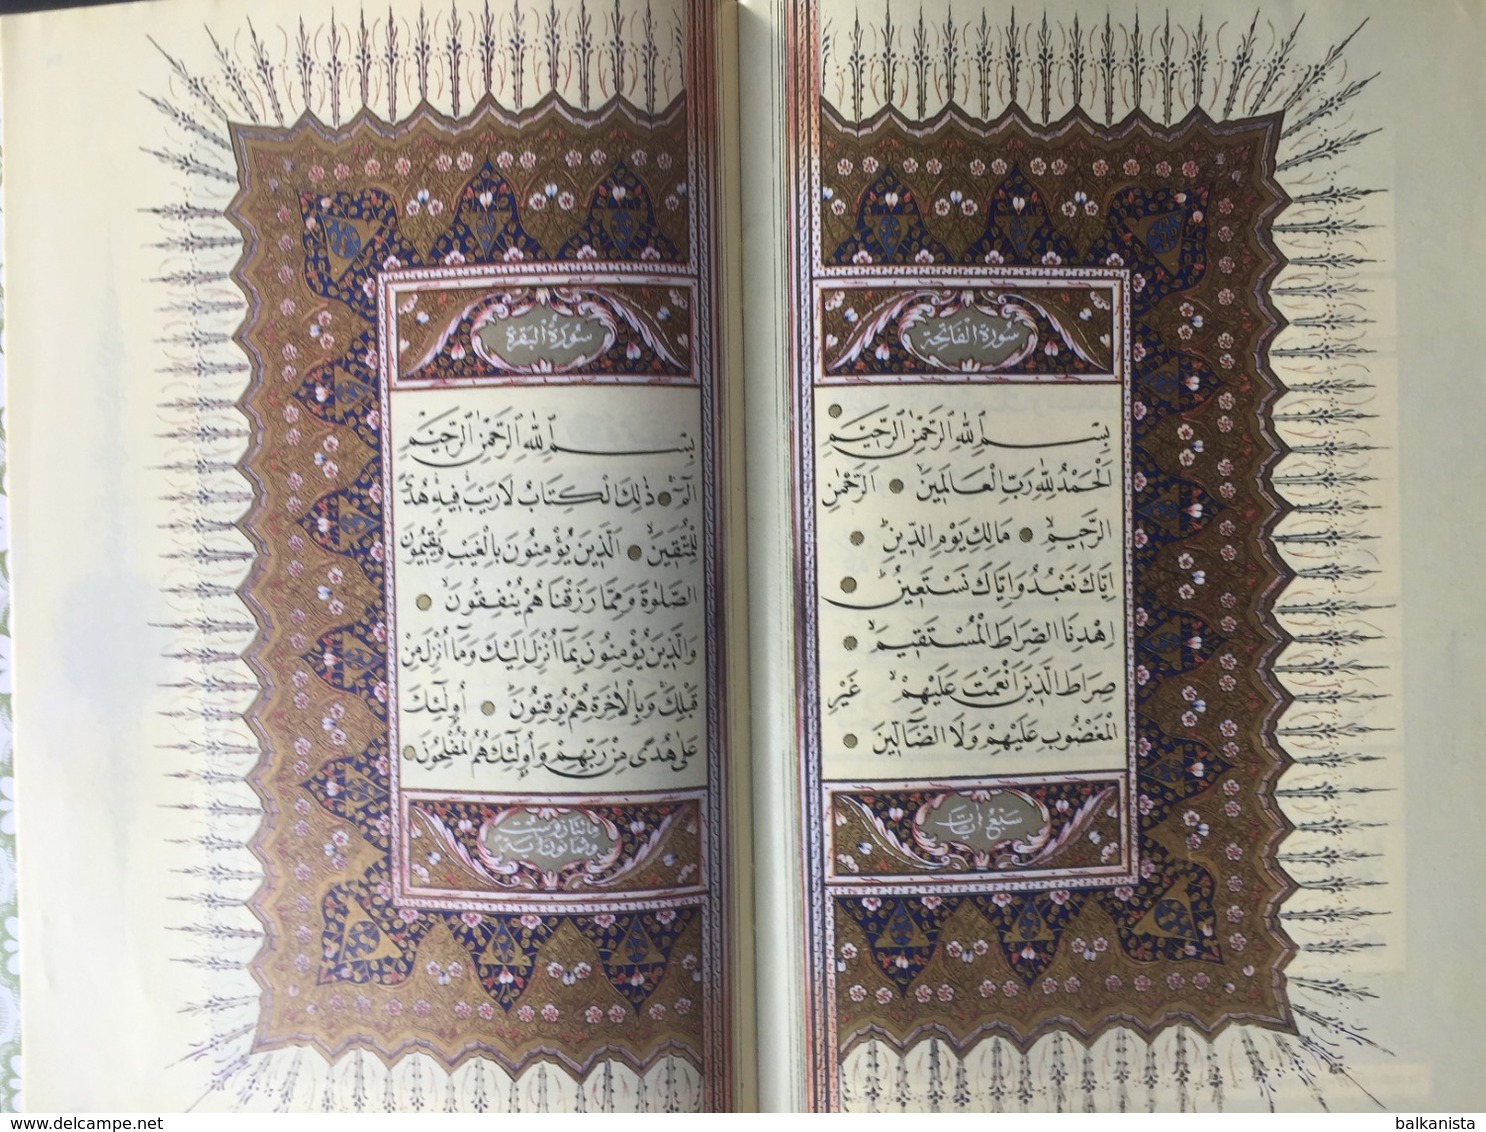 I'm Learning Qur'an - Practical Tajweed ARABIC QURAN CALLIGRAPHY HUSEYIN KUTLU